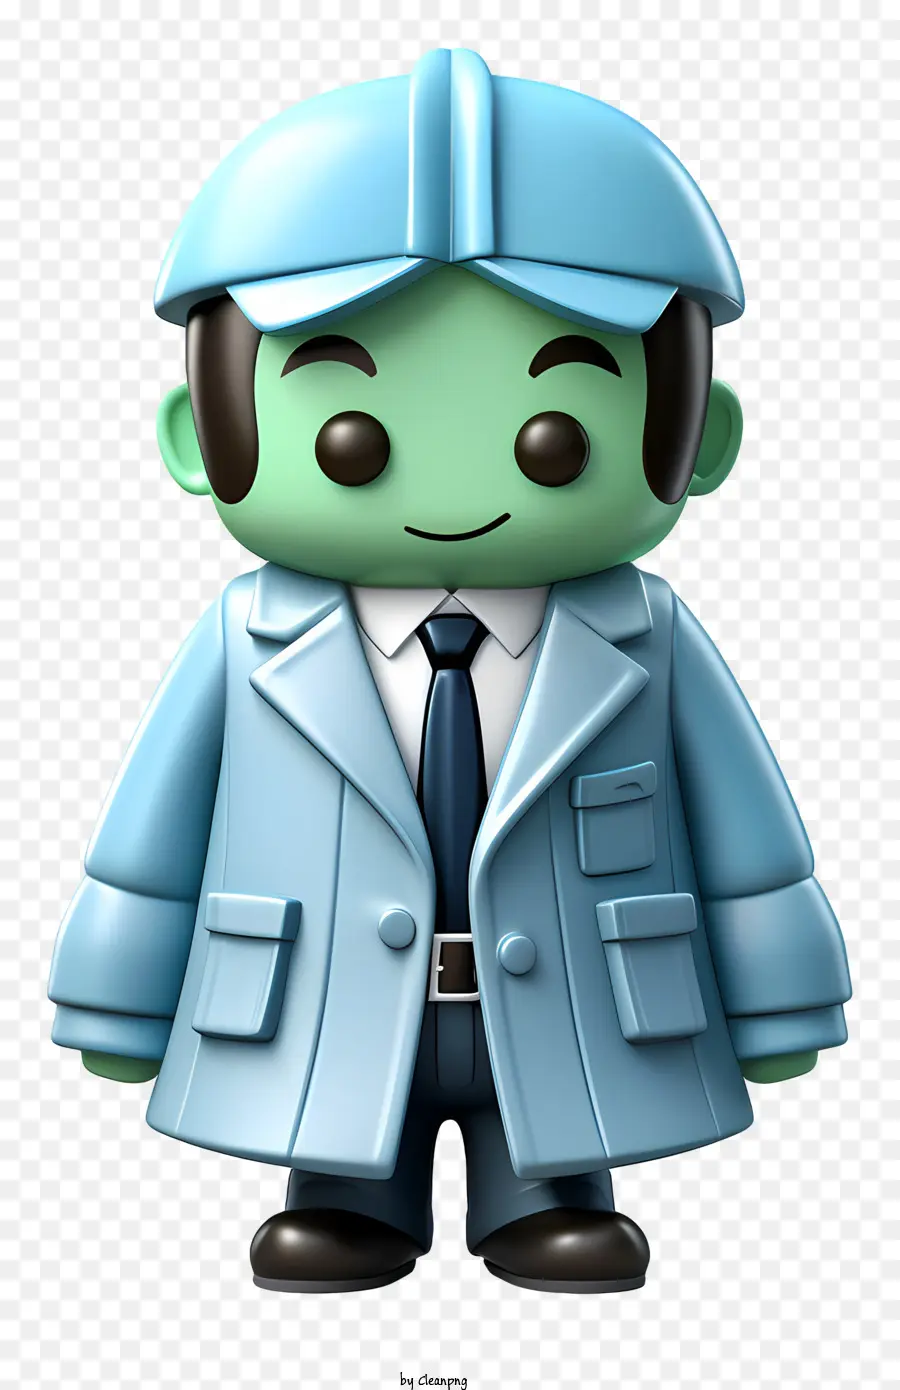 Stethoskop - Grüner, humanoischer Charakter mit Stethoskop und Anzug